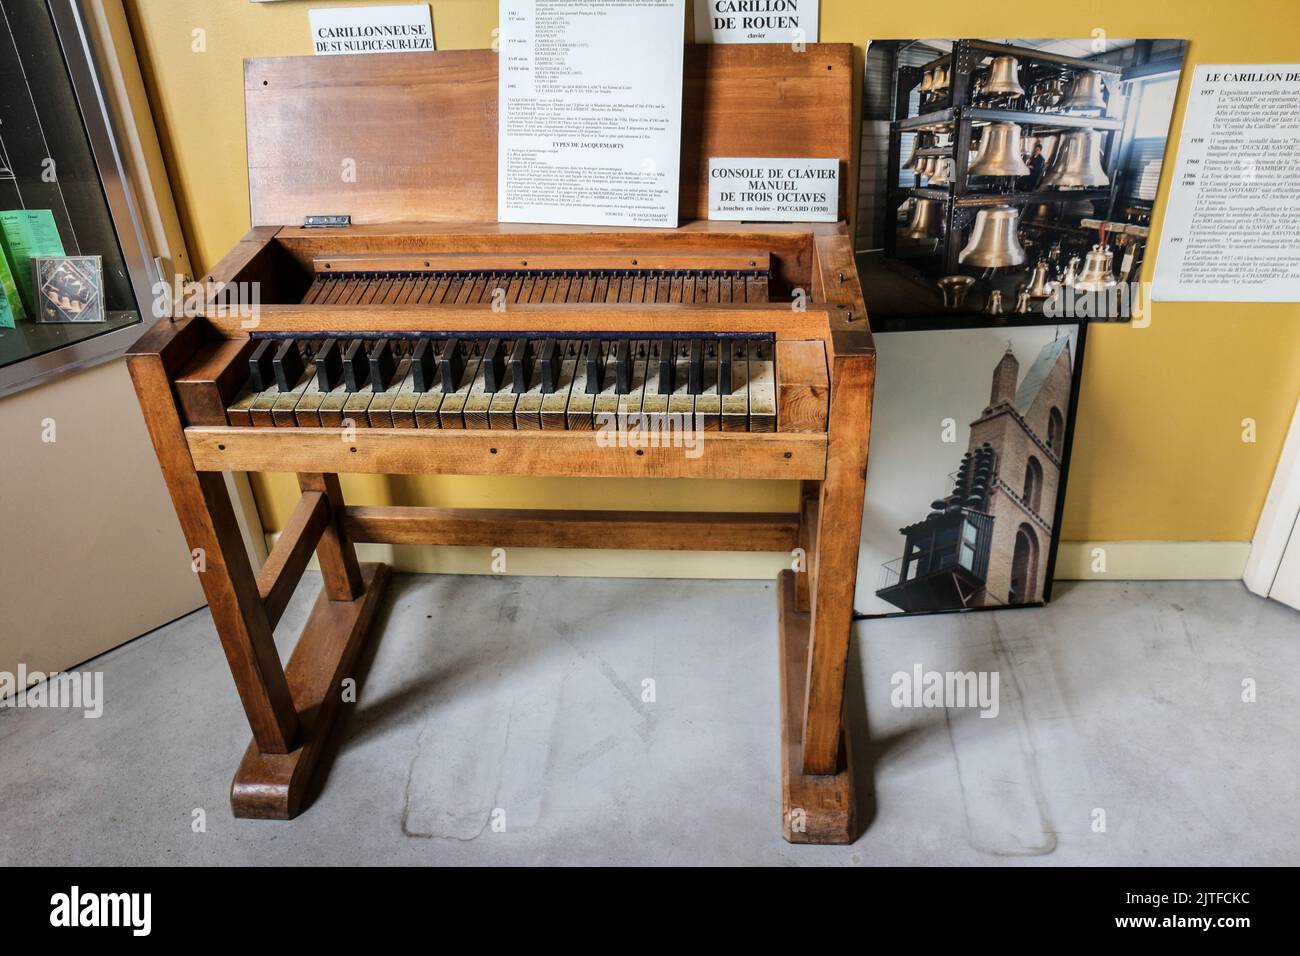 Carillon keyboard Banque de photographies et d'images à haute résolution -  Alamy